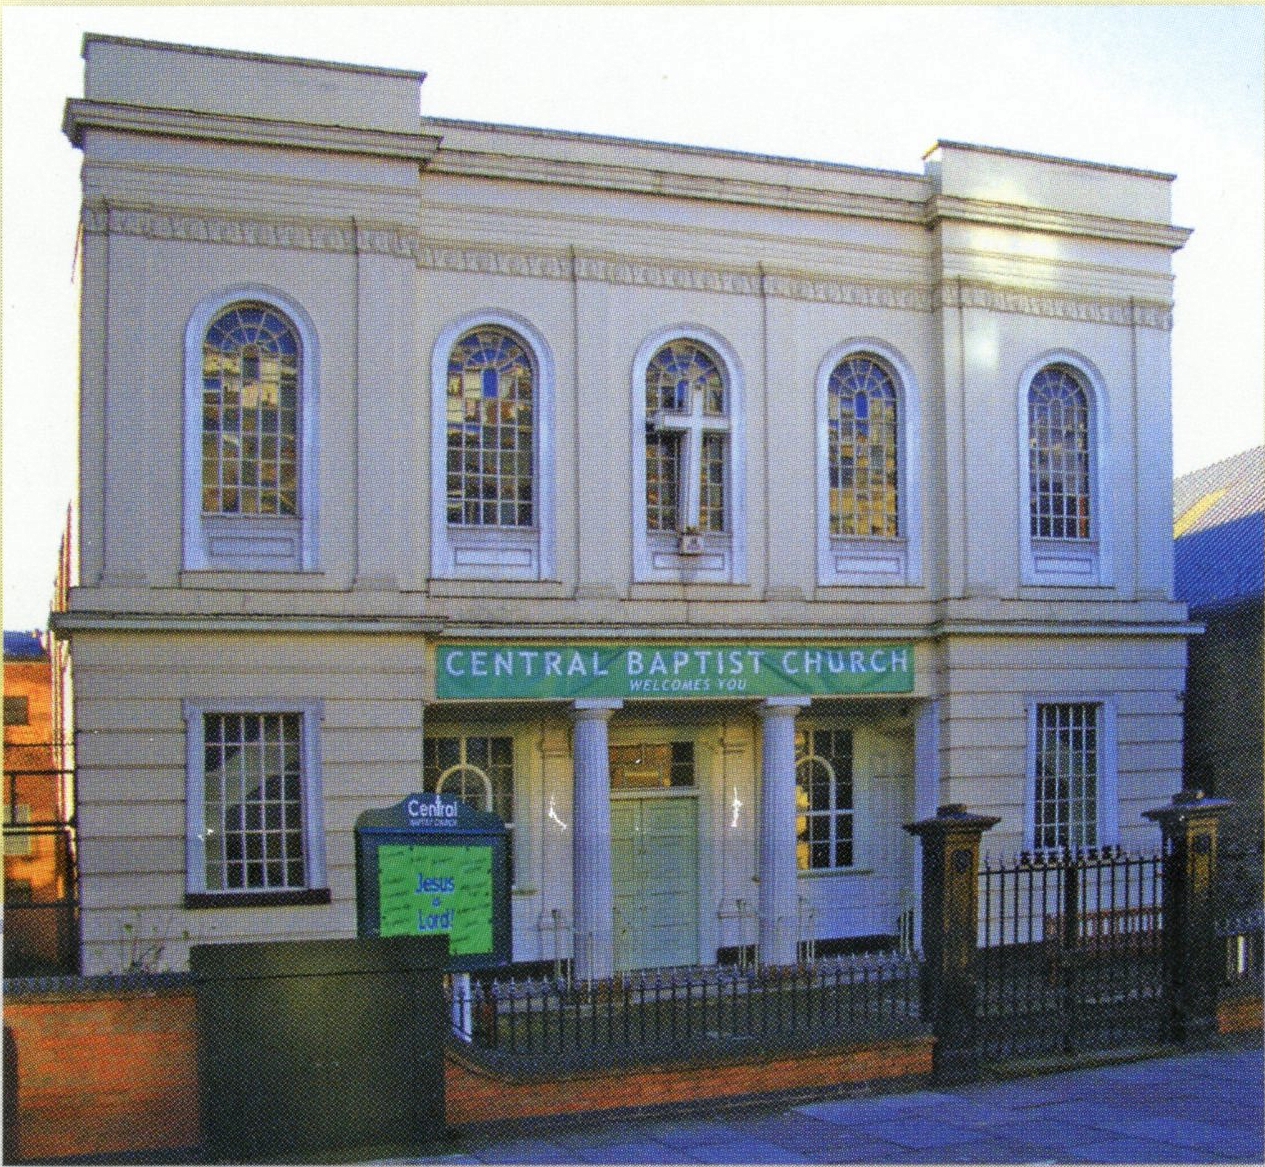 Central Baptist Church, Leicester, England, 2013